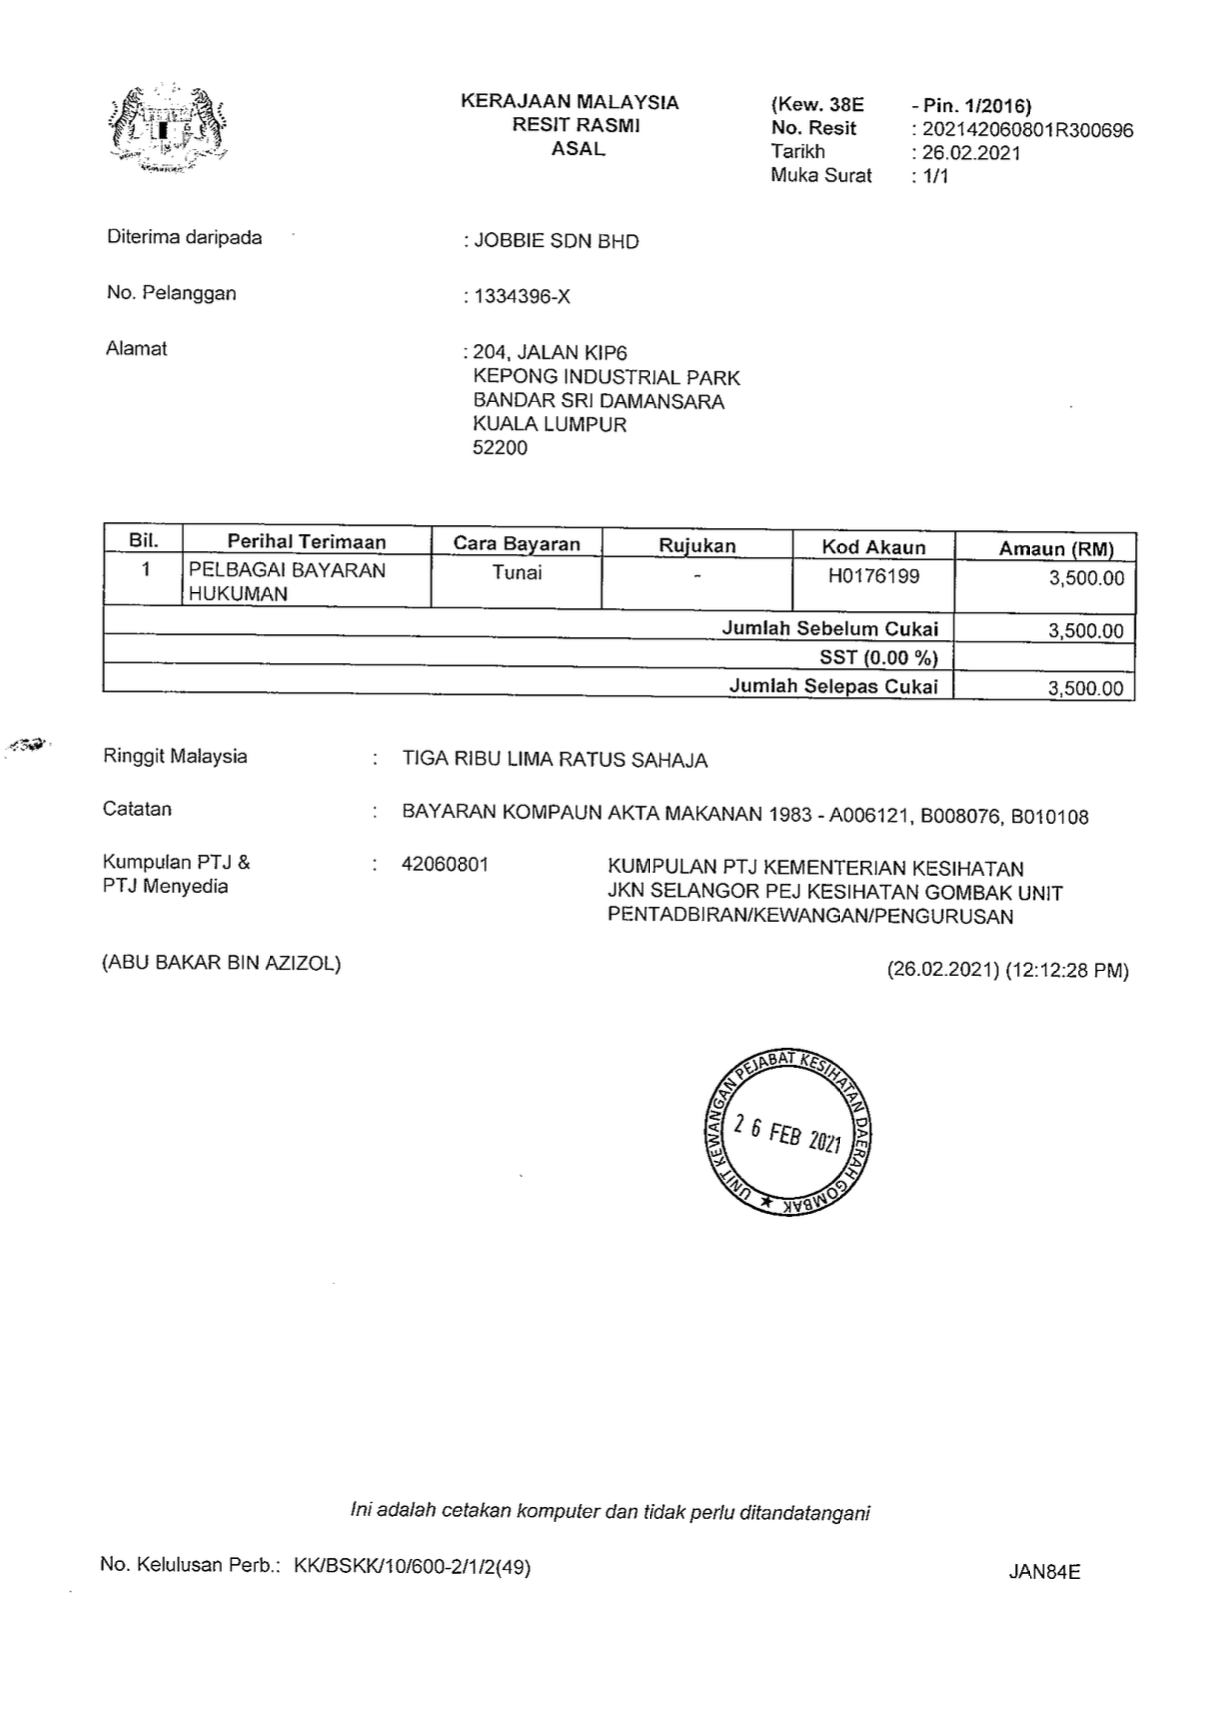 JOBBIE fined RM7000 by KKM/MOH